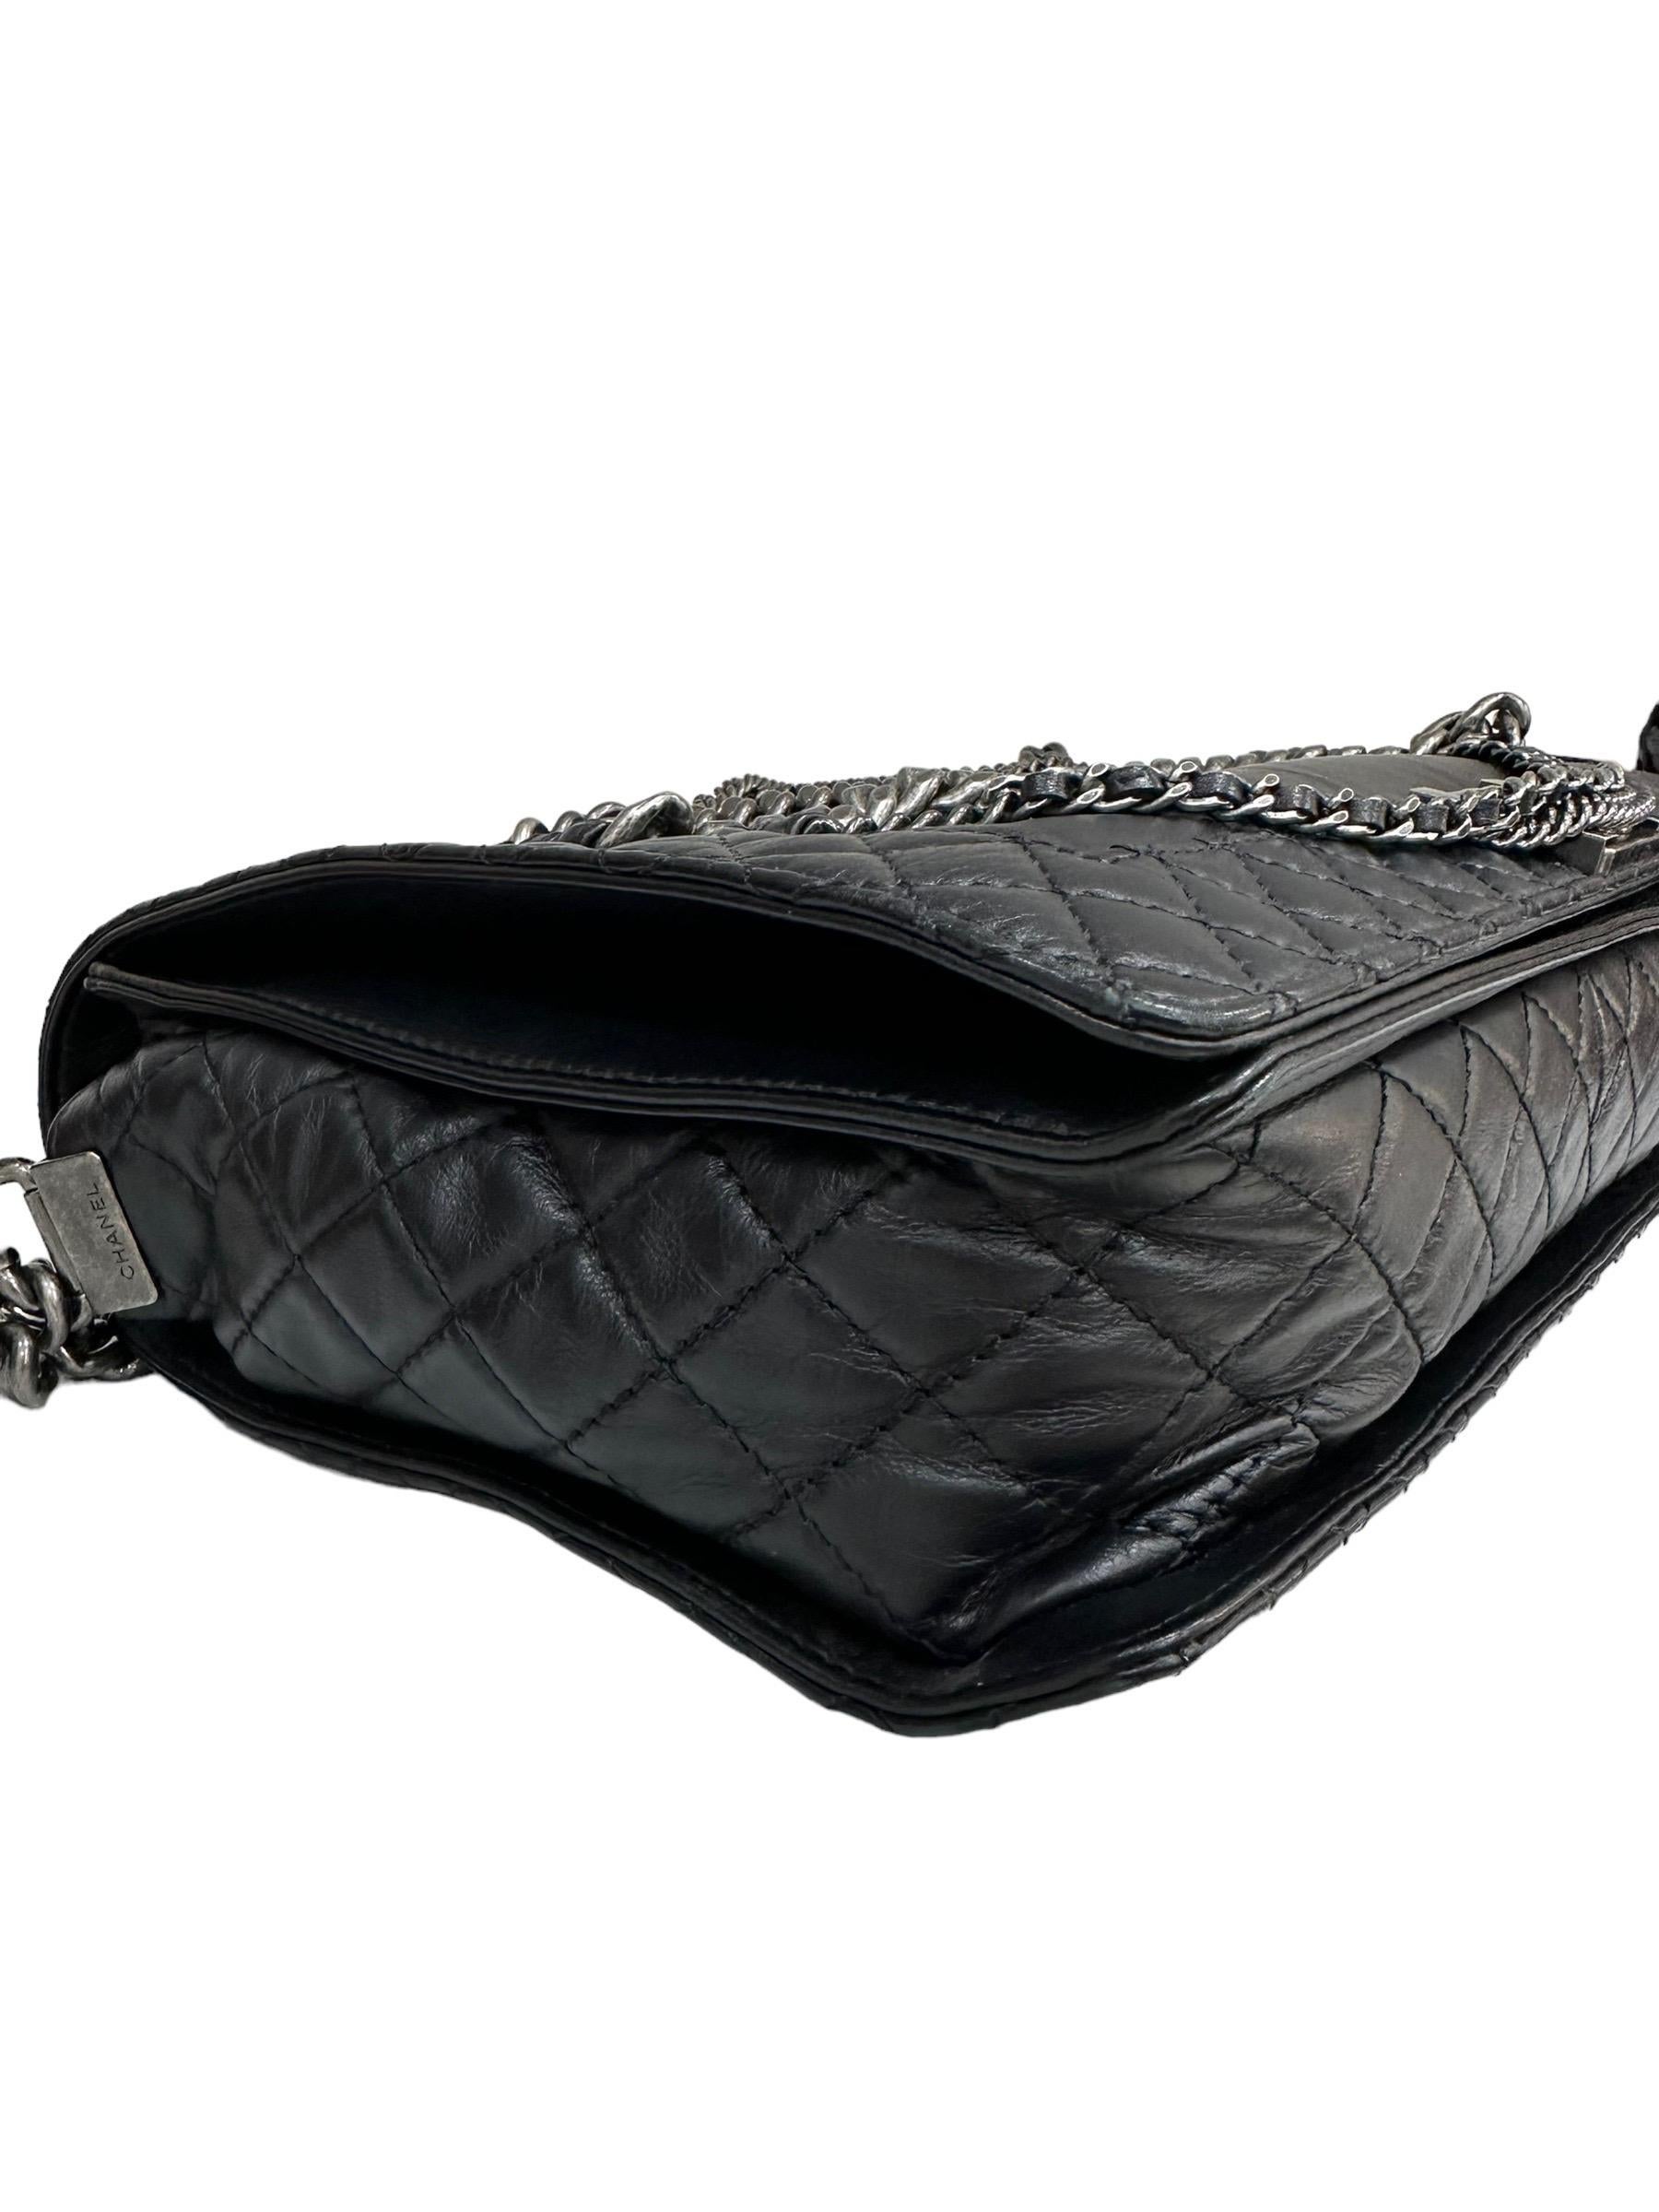 2014 Chanel Boy XL Limited Edition Shoulder Bag Multi Chains 1